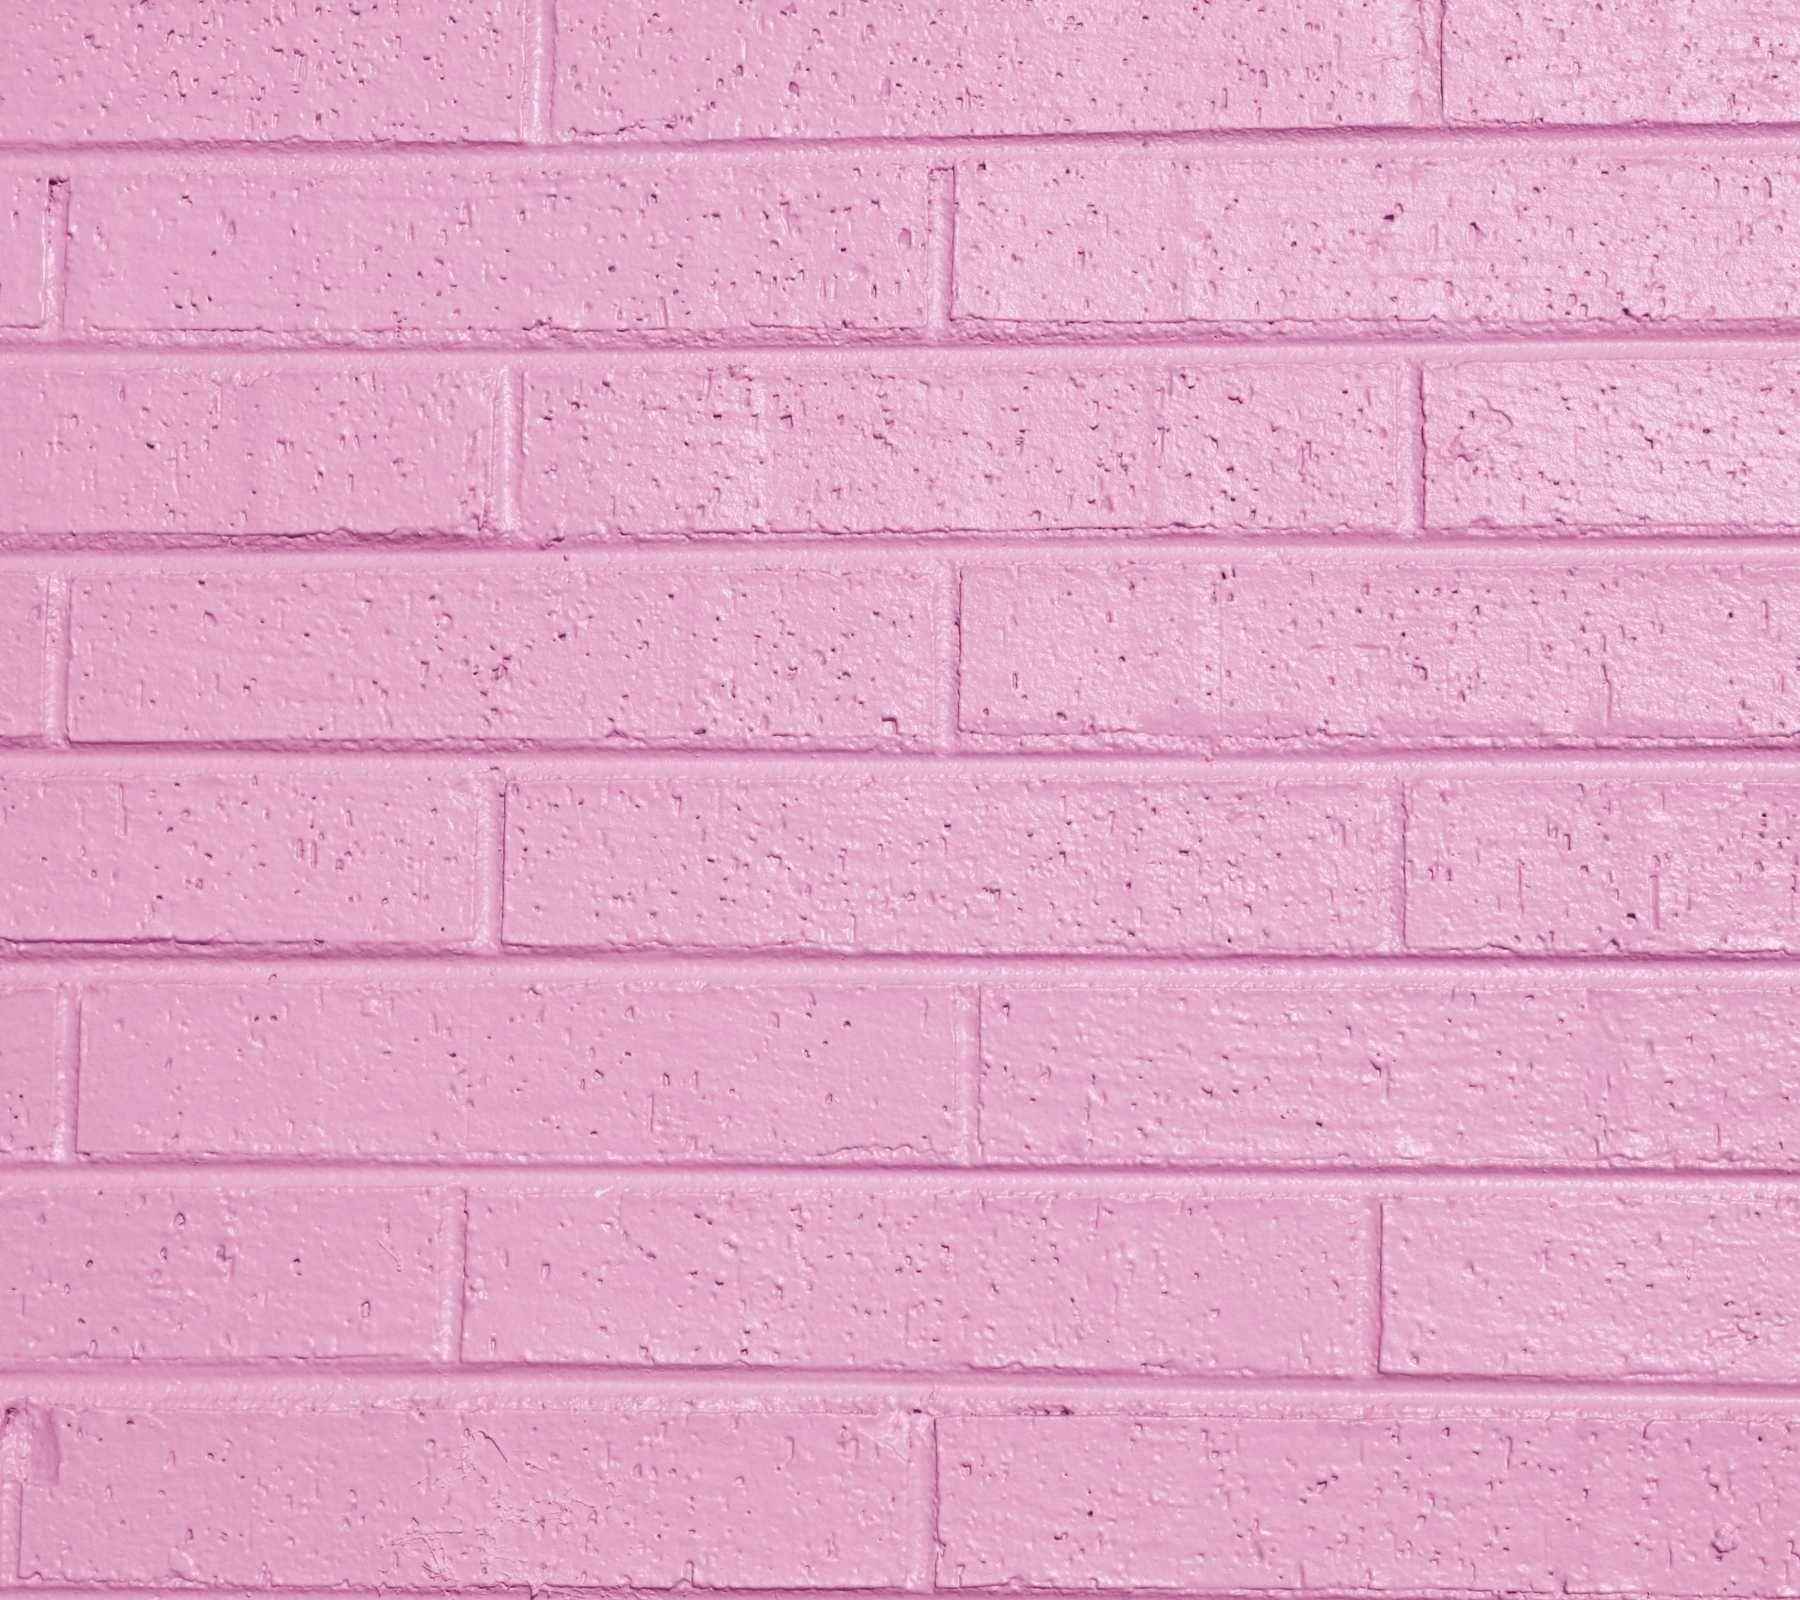 Backgrounds Pink Tumblr sẽ đưa bạn vào một không gian mới lạ và đầy cảm hứng. Hãy để những hình ảnh này kích thích trí tưởng tượng của bạn và giúp bạn thư giãn sau những giờ làm việc căng thẳng nhé!